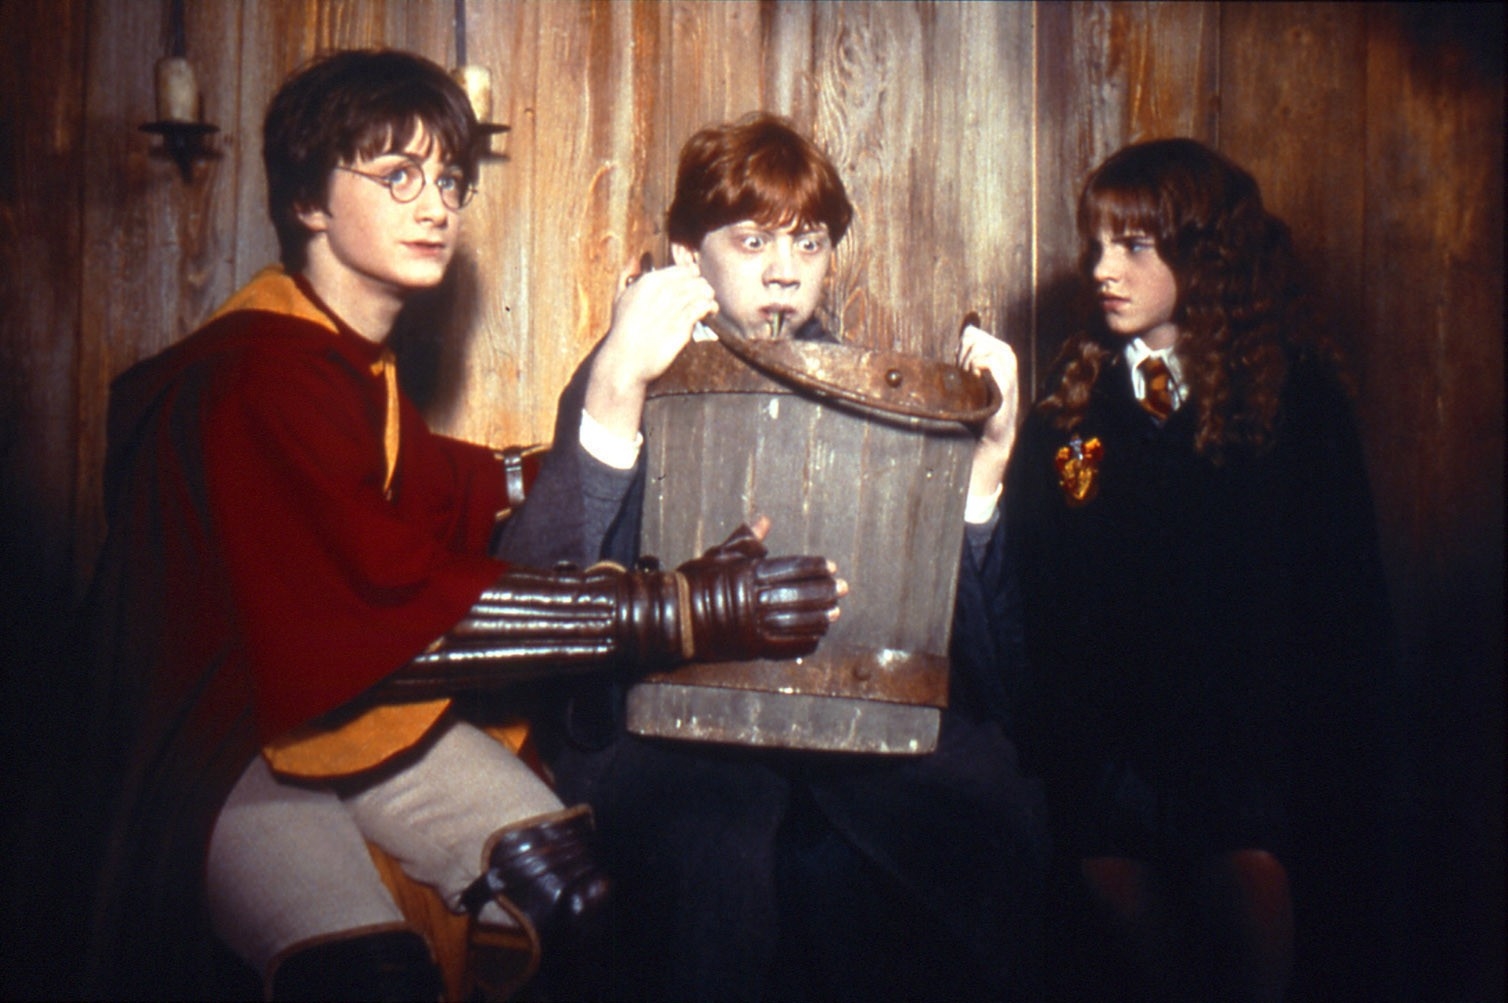 Image du film Harry Potter et la Chambre des secrets 108e388a-d6e0-4251-912d-54e93861e55b